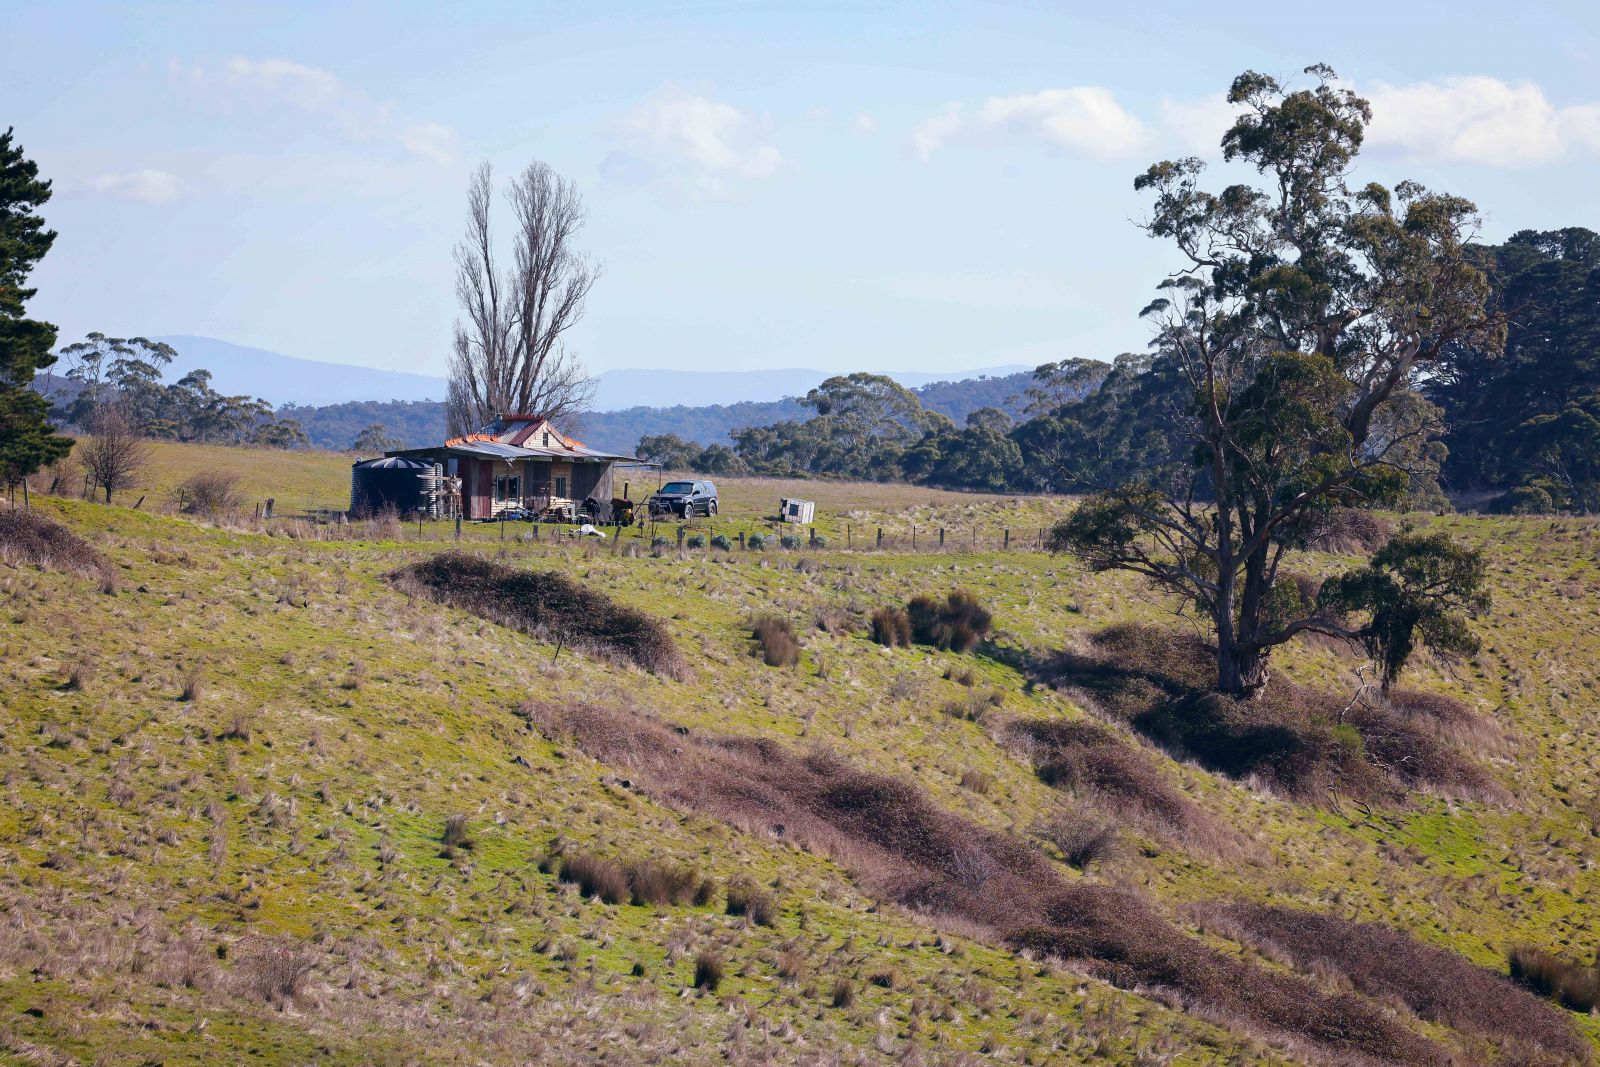 Vùng thảo nguyên rộng bao la, bát ngát như bối cảnh quay của “Ngôi nhà nhỏ trên thảo nguyên” có lẽ cũng là một điểm ấn tượng của miền quê xứ Úc. 